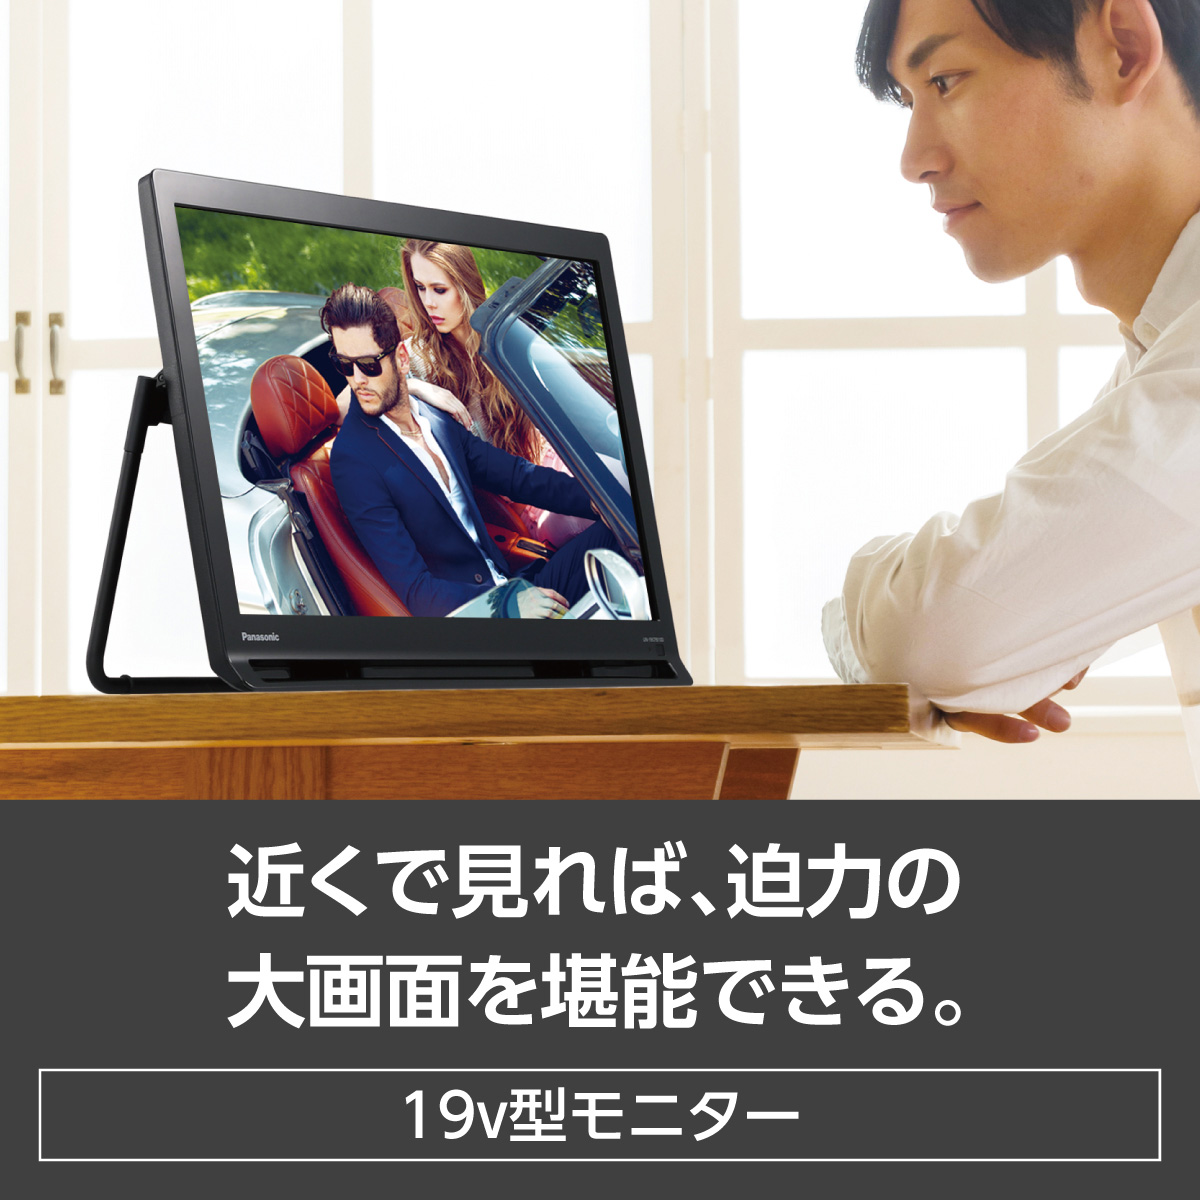 【スタンド】 Panasonic プライベートビエラ 19V型 ポータブル液晶テレビ UN-19F11-K ひかりTVショッピングPayPay